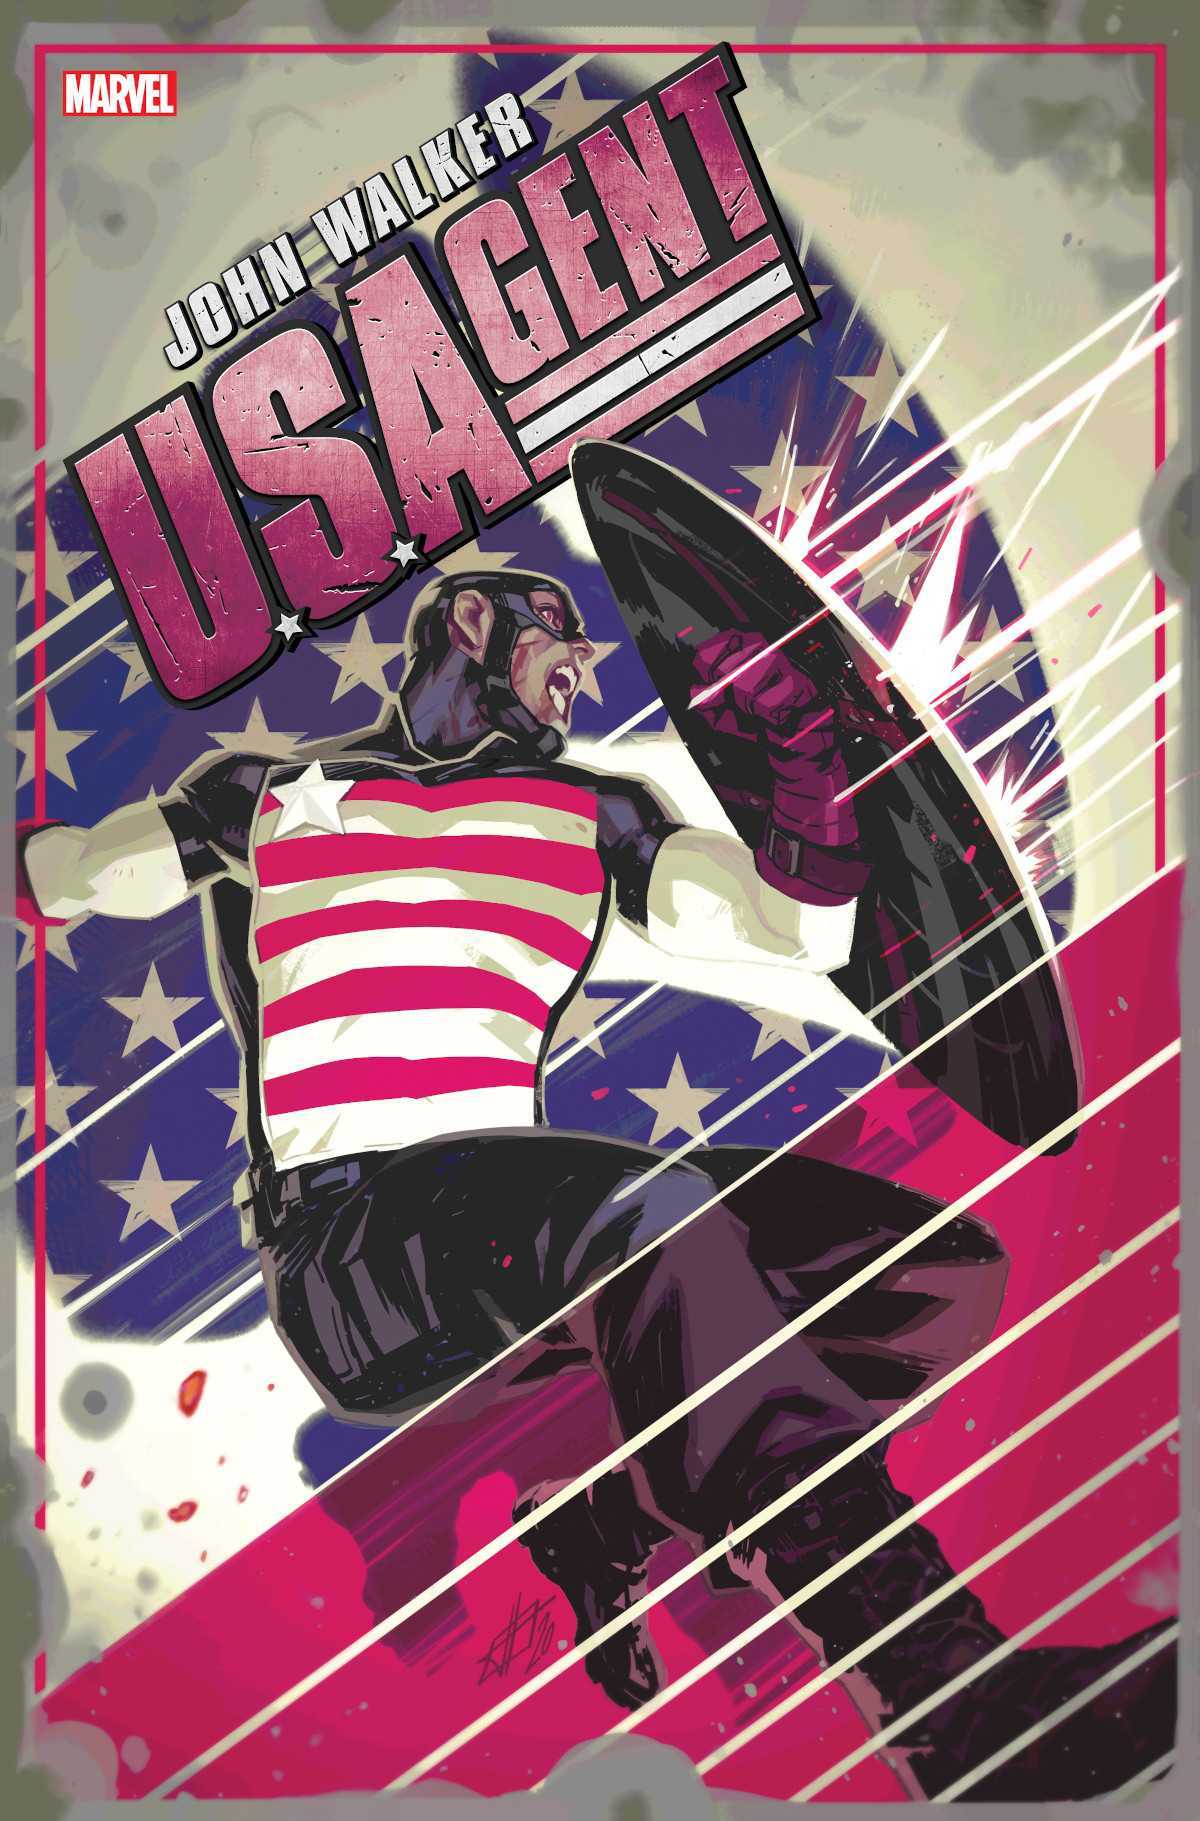 Reveladas as capas variantes de U.S. Agent